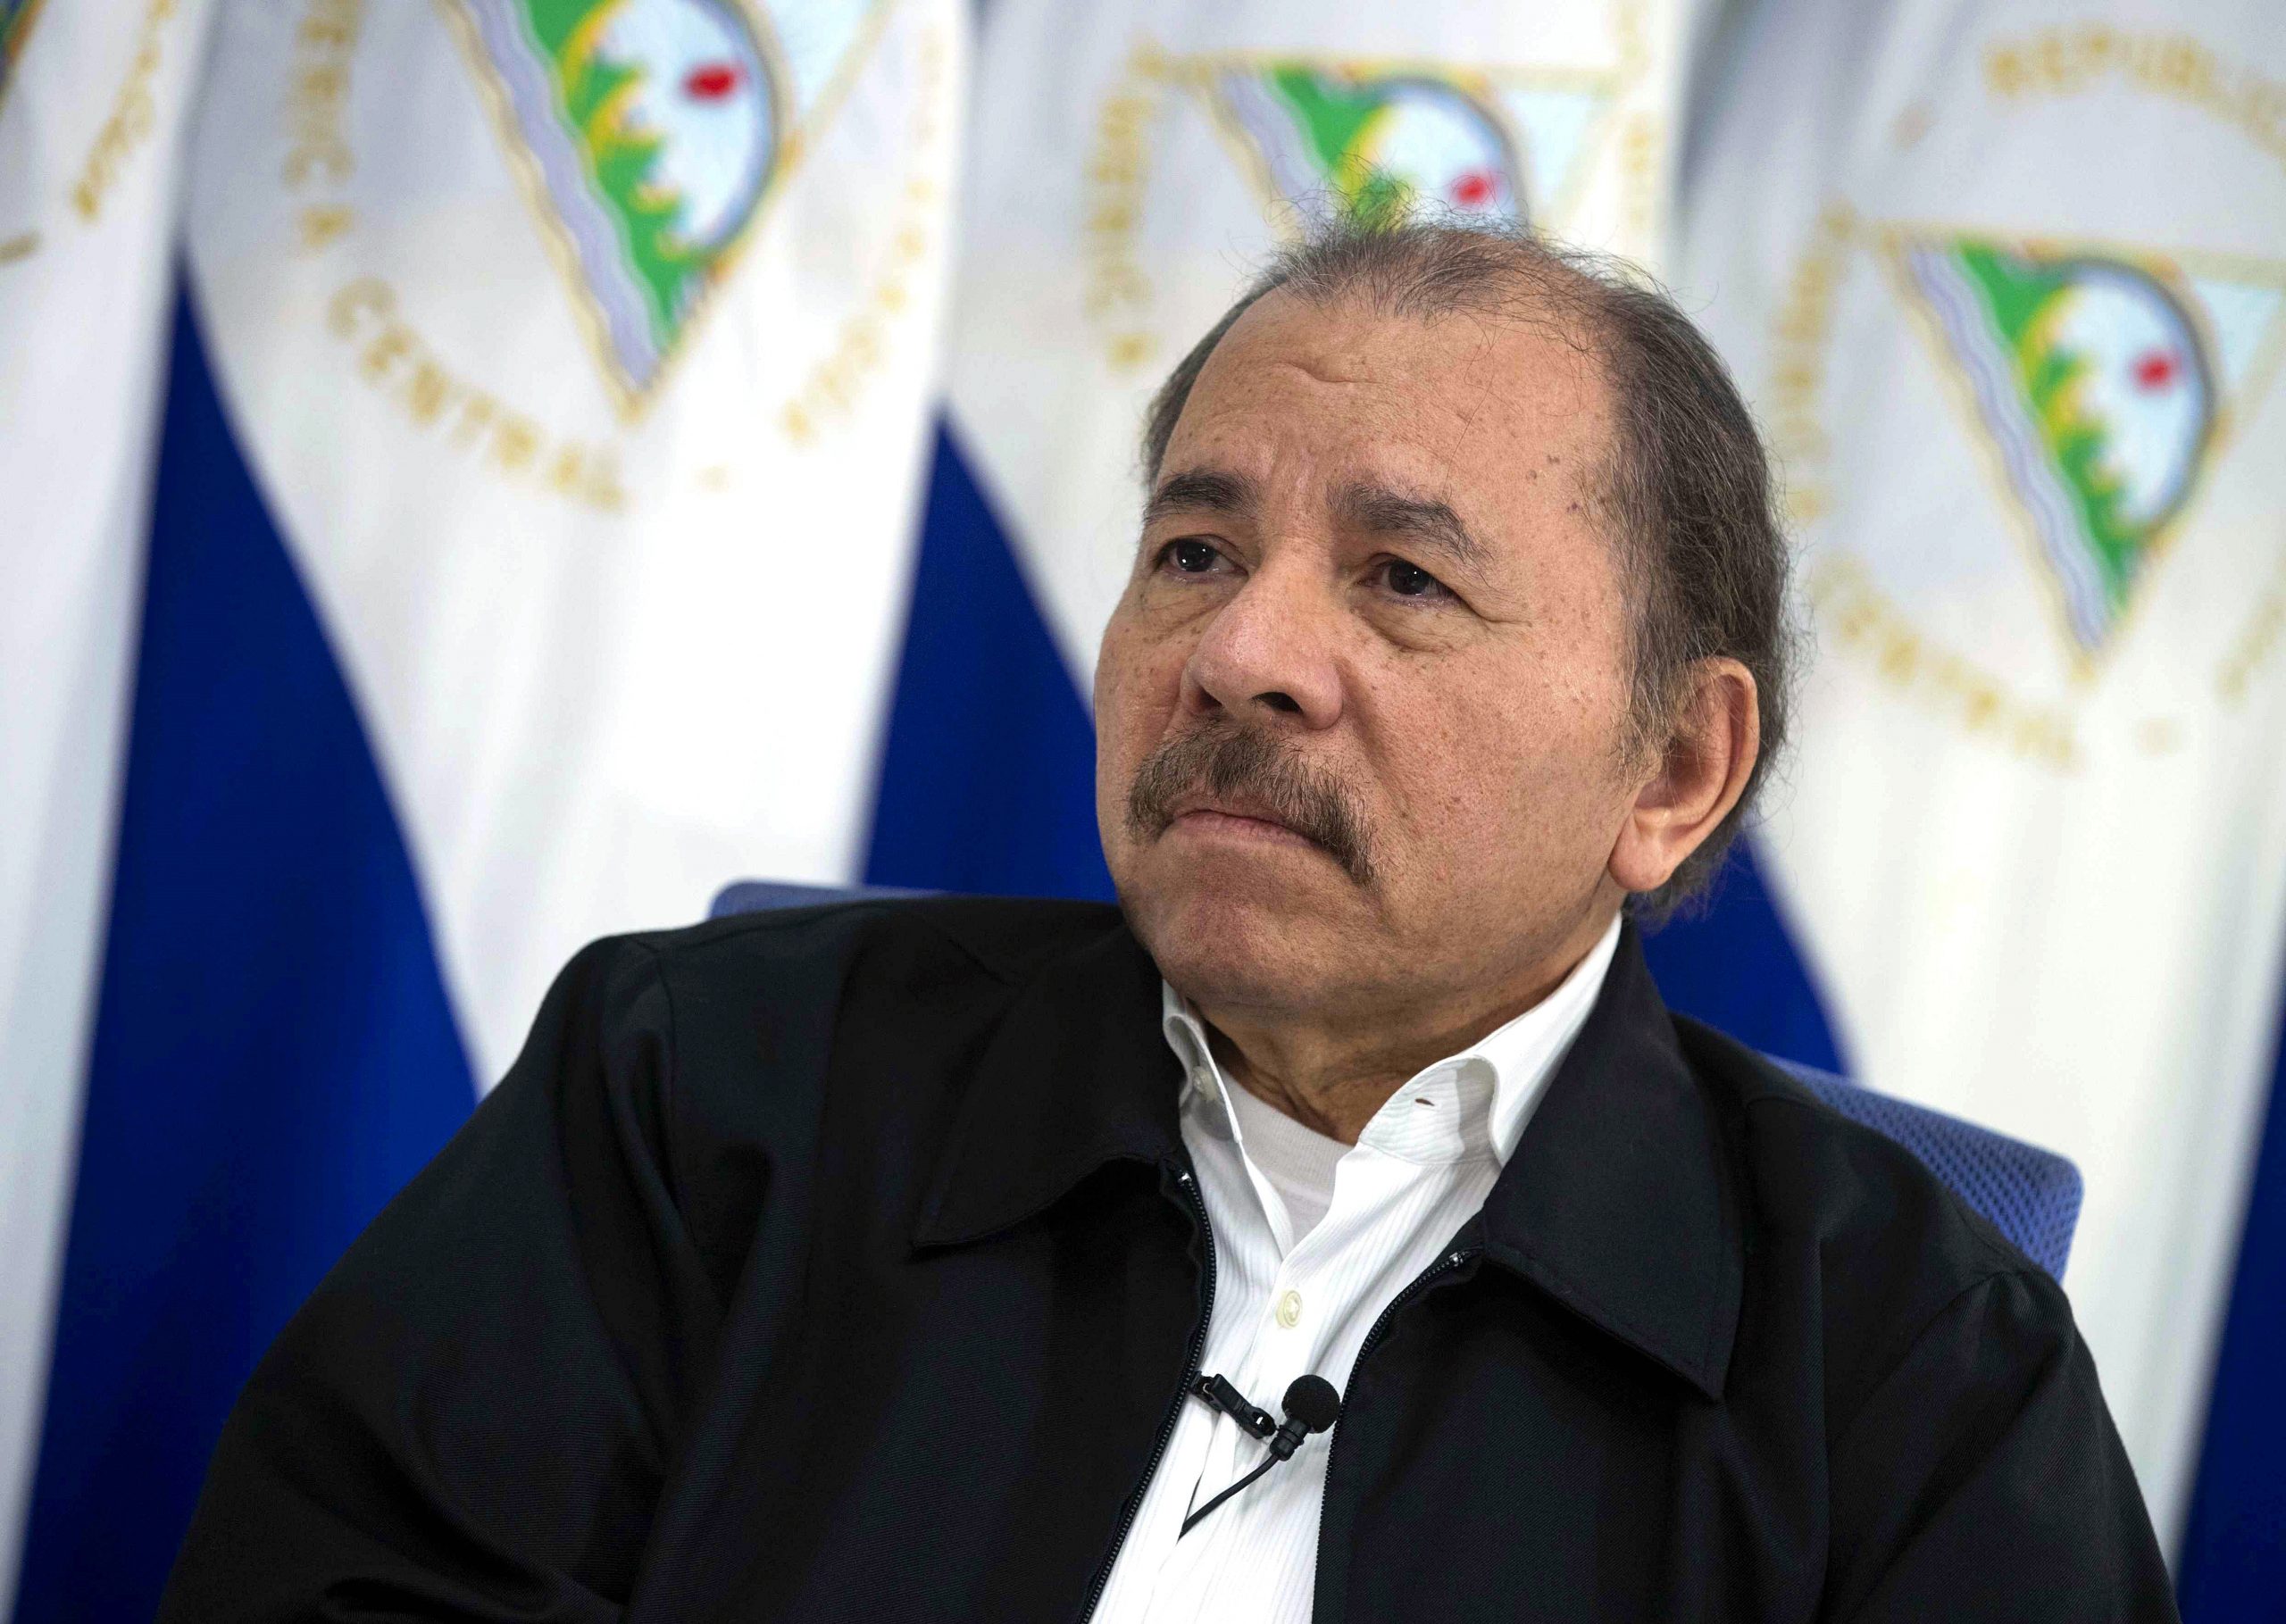 Mereka meminta Organisasi Negara-negara Amerika untuk menyatakan pemerintah Daniel Ortega “tidak sah”